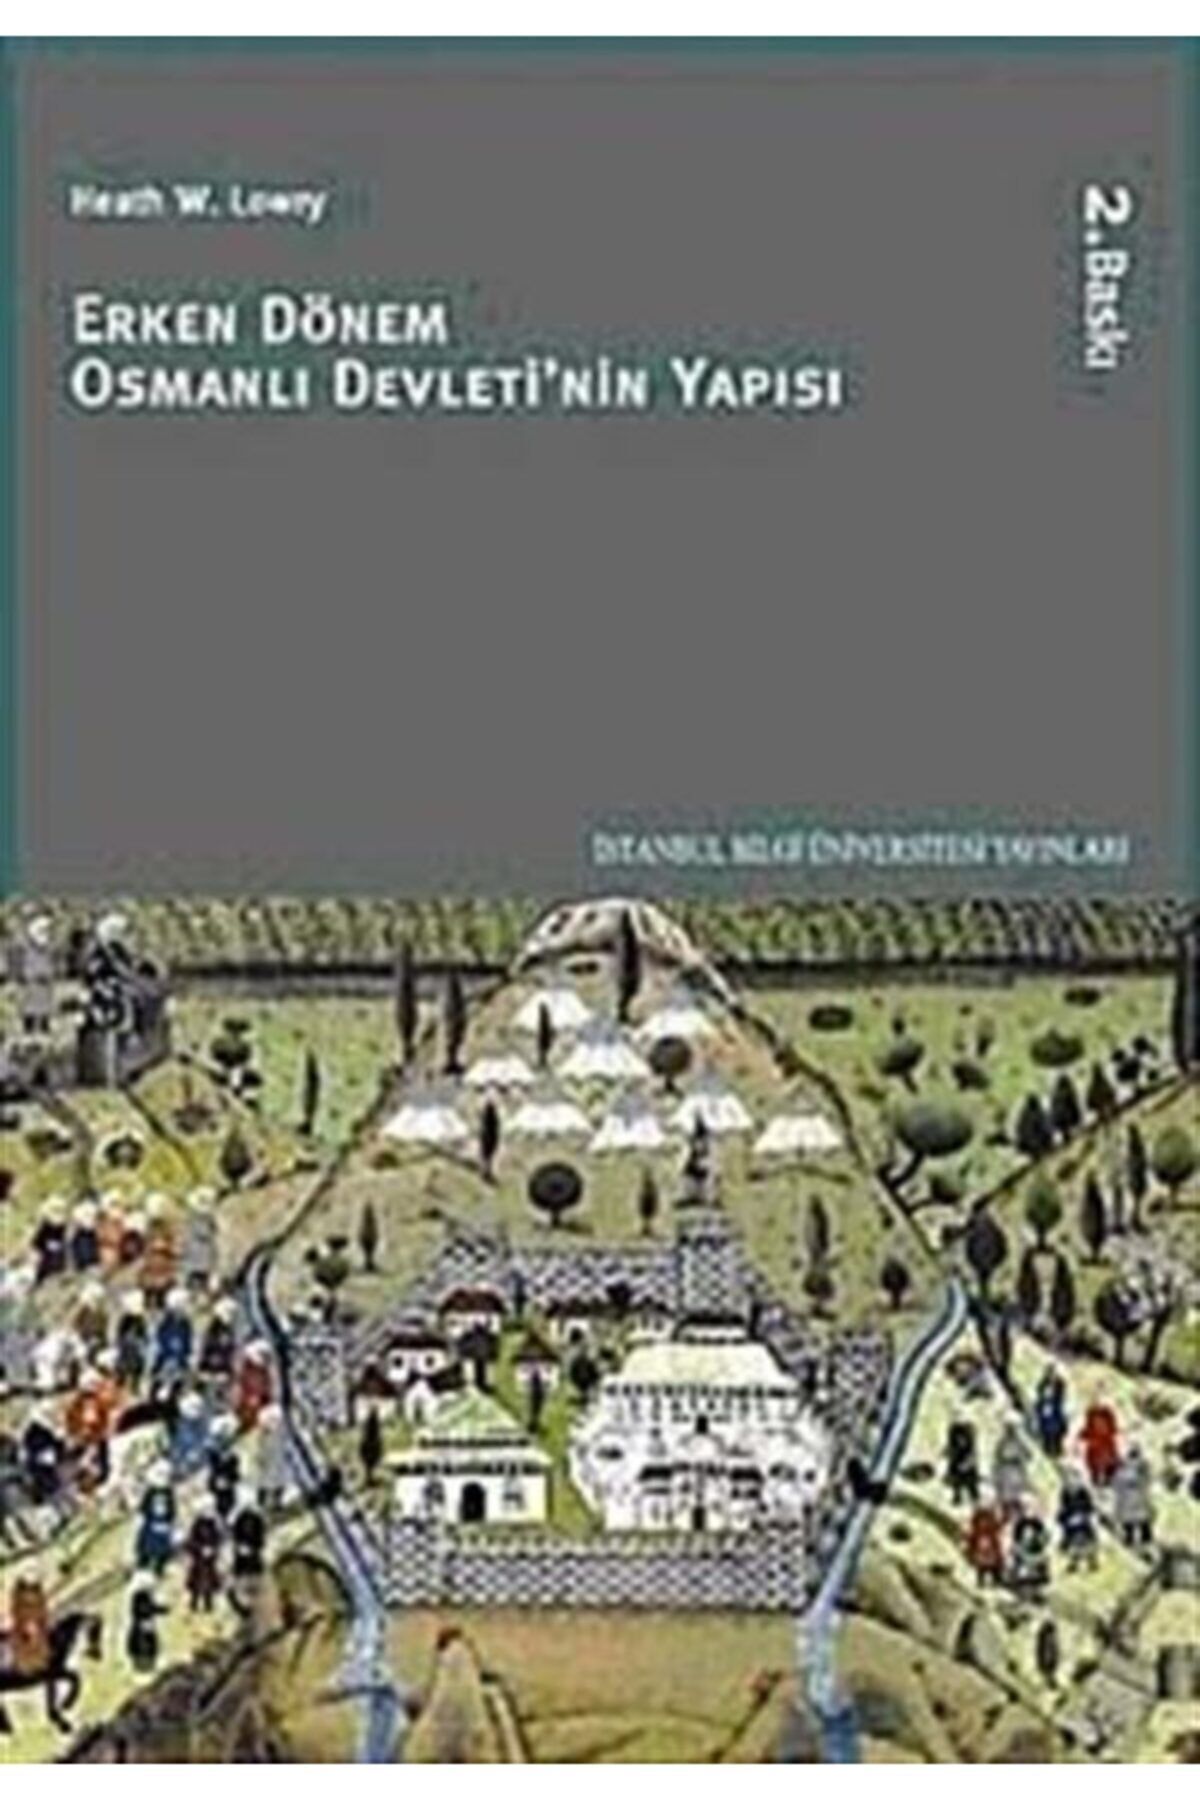 İstanbul Bilgi Üniversitesi Yayınları Erken Dönem Osmanlı Devleti'nin Yapısı